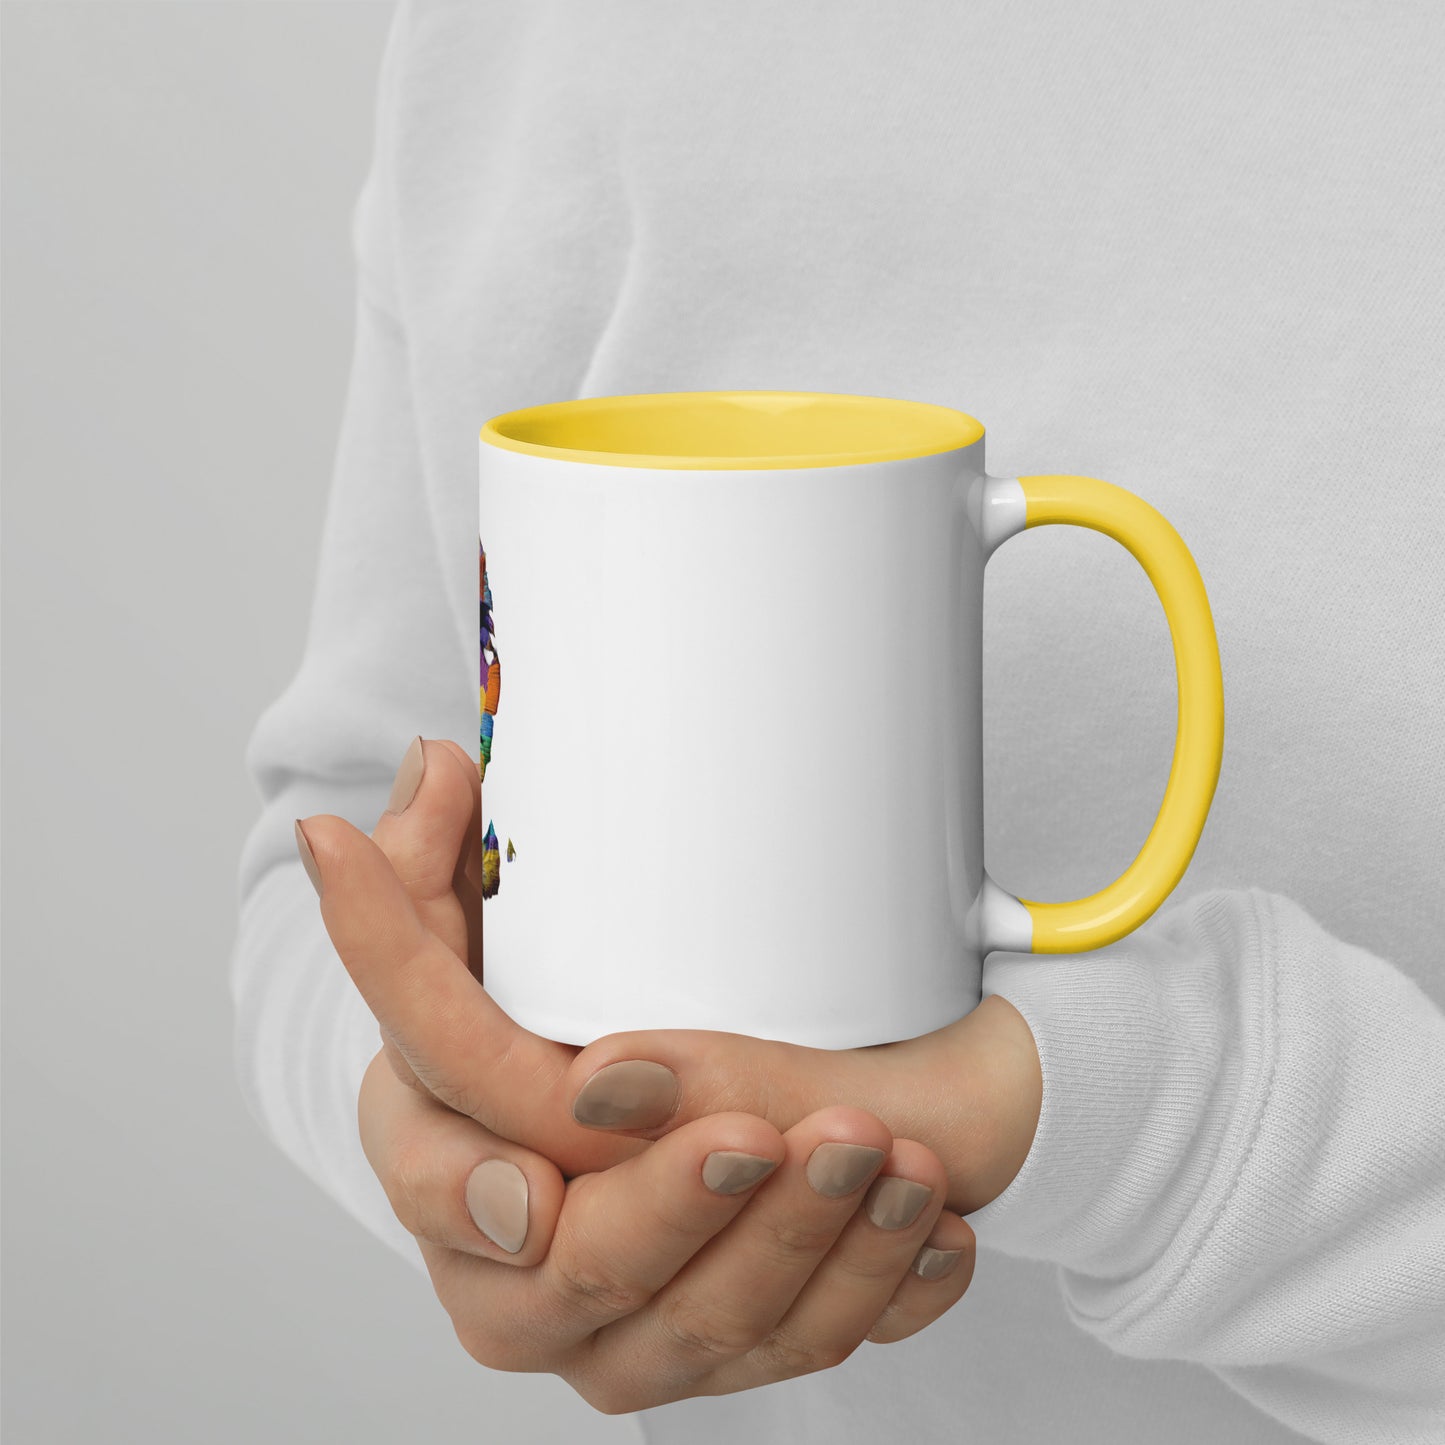 Baba AGA's Morning Coffee Mug